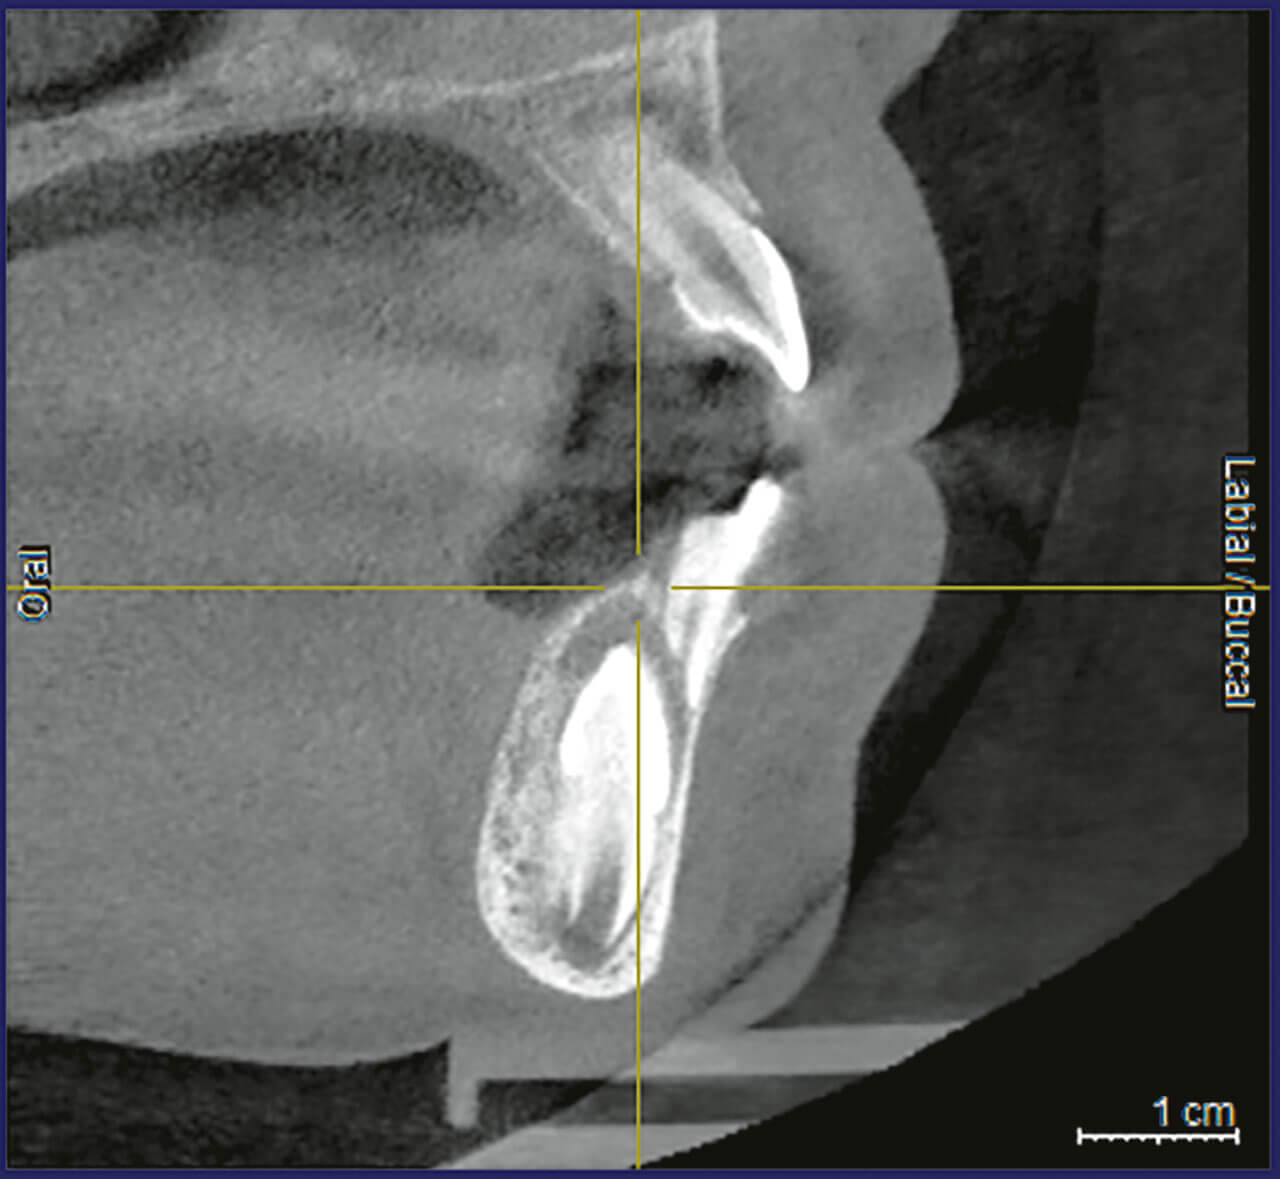 Abb. 3 Zahn 33 zeigte sich hingegen nach vestibulär verlagert. Die entgegengesetzte Lage der Zähne 32 und 33 in oro-vestibulärer Richtung erschien günstig zur Auflösung der Transposition.